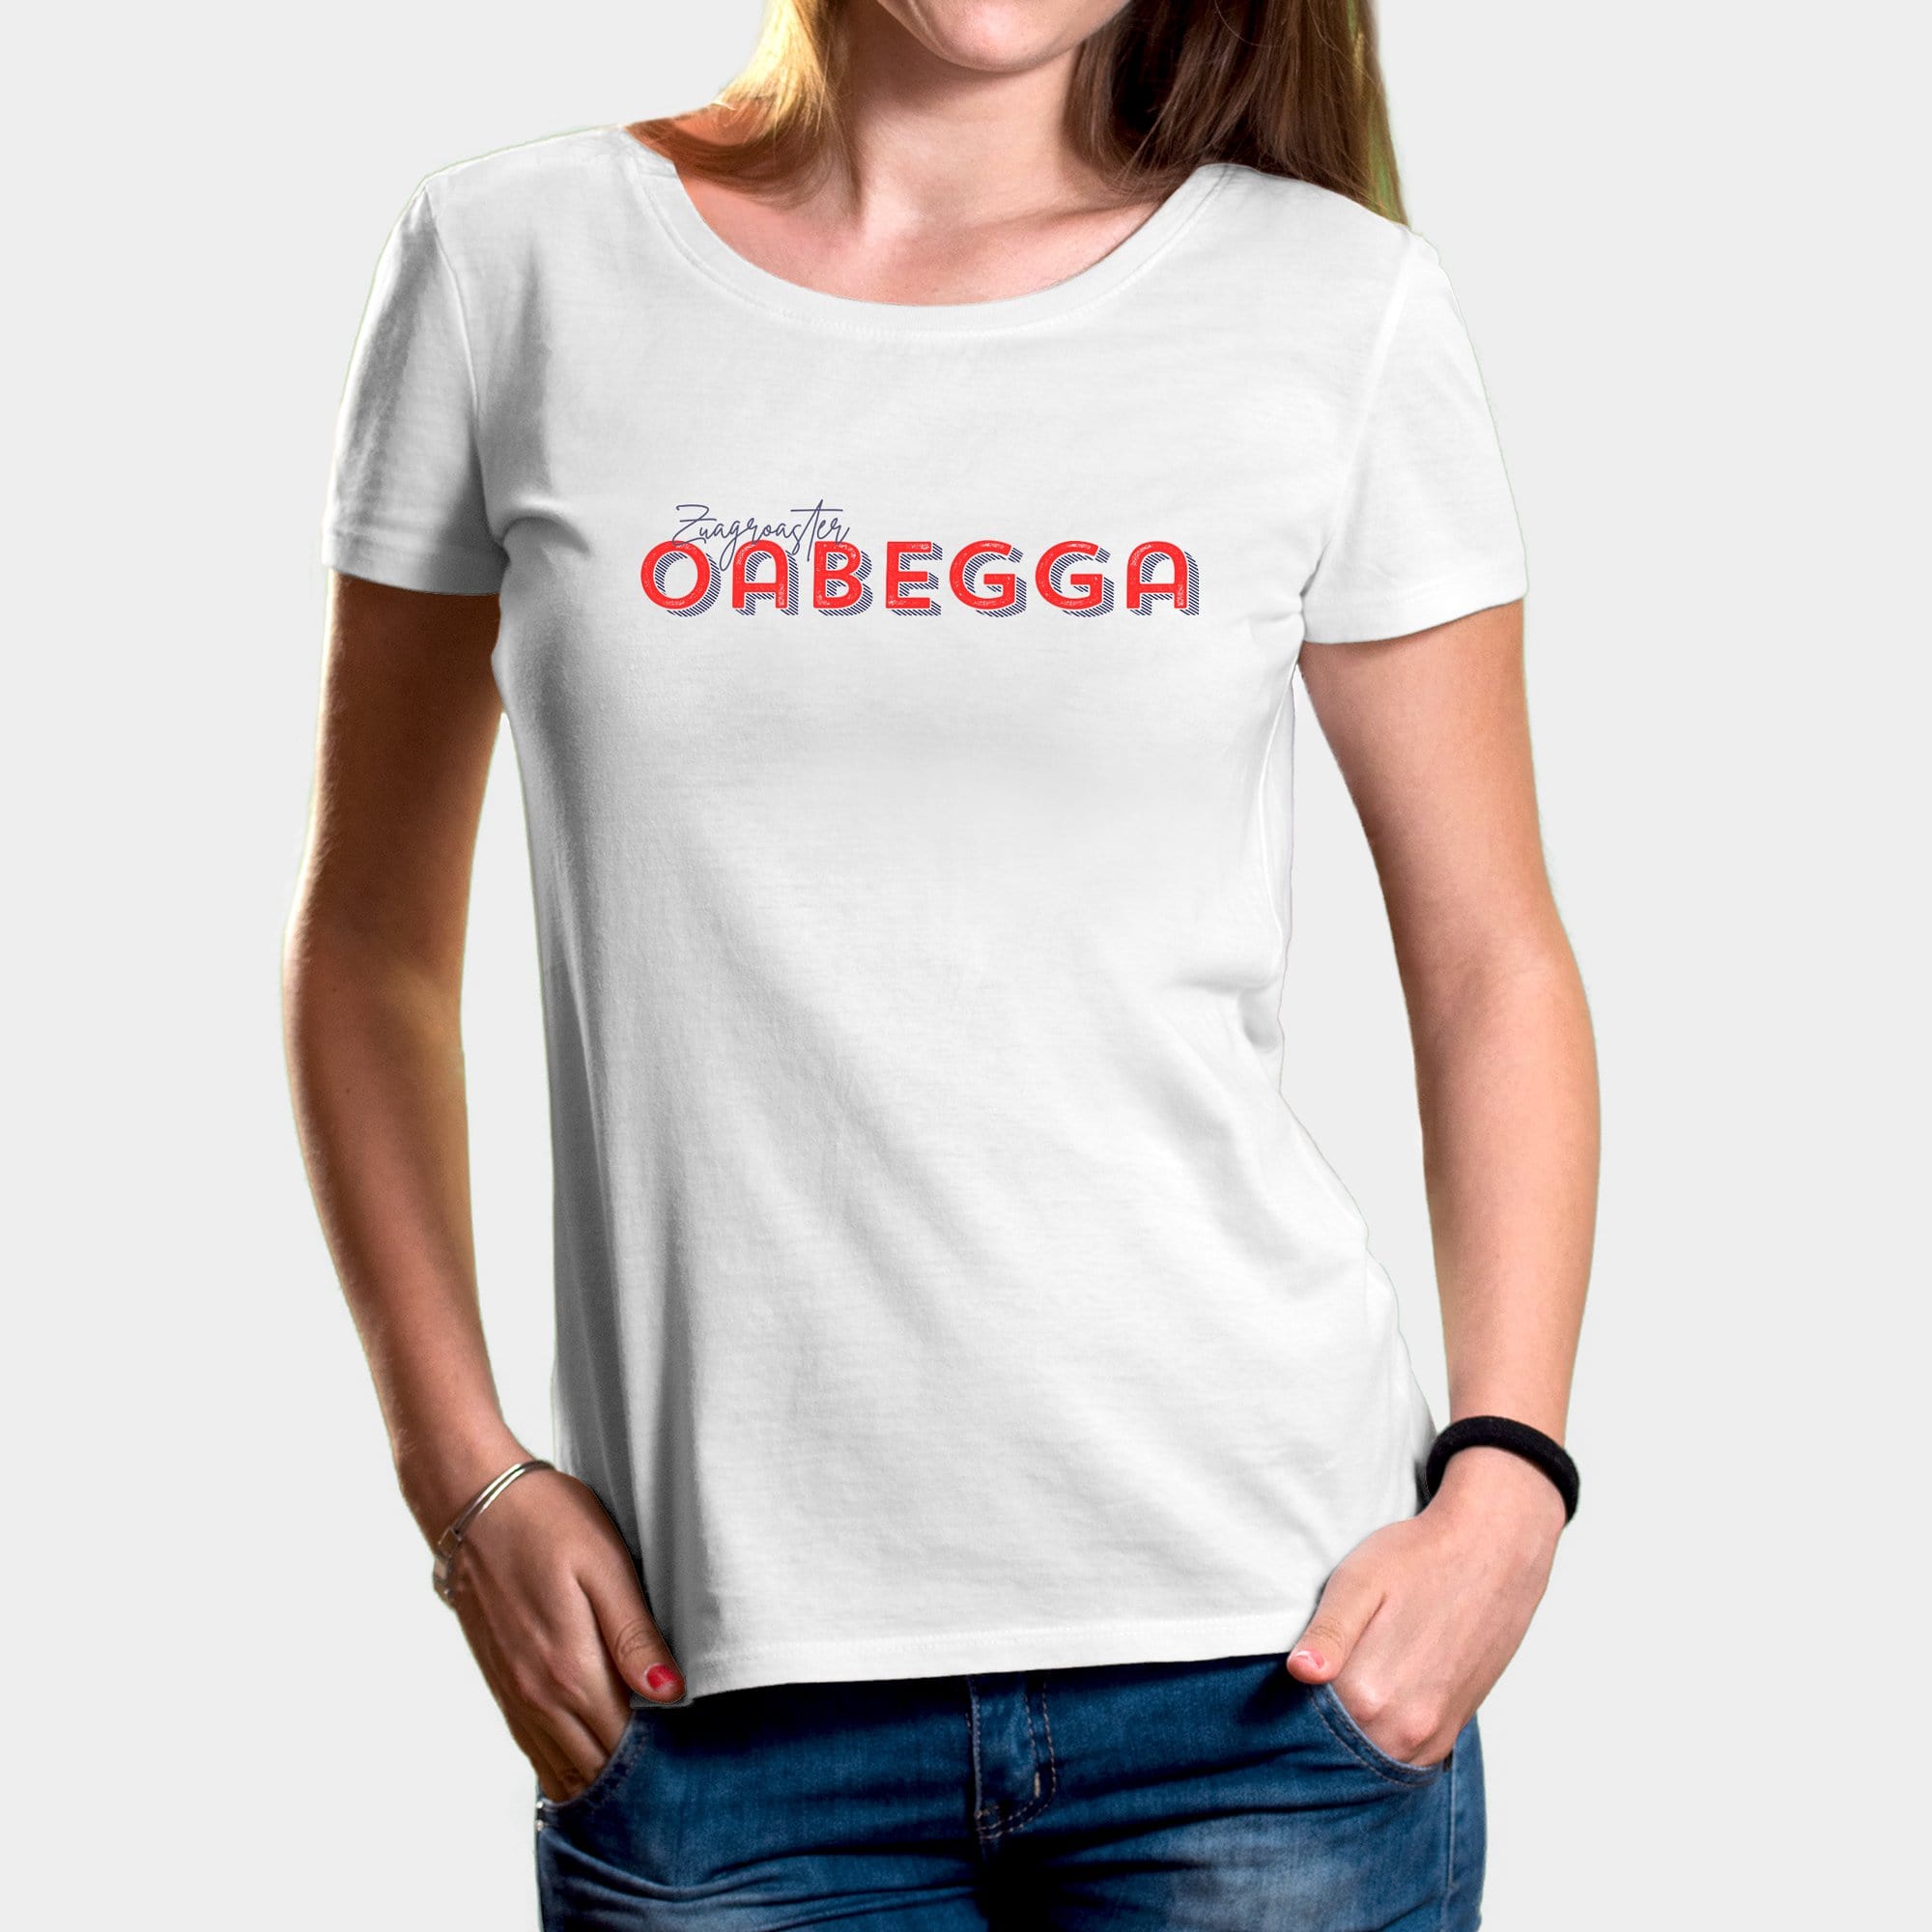 Projekt Damen-T-Shirt "Zuagroaster Oabegga" XS / weiß - aus nachhaltiger und fairer Produktion